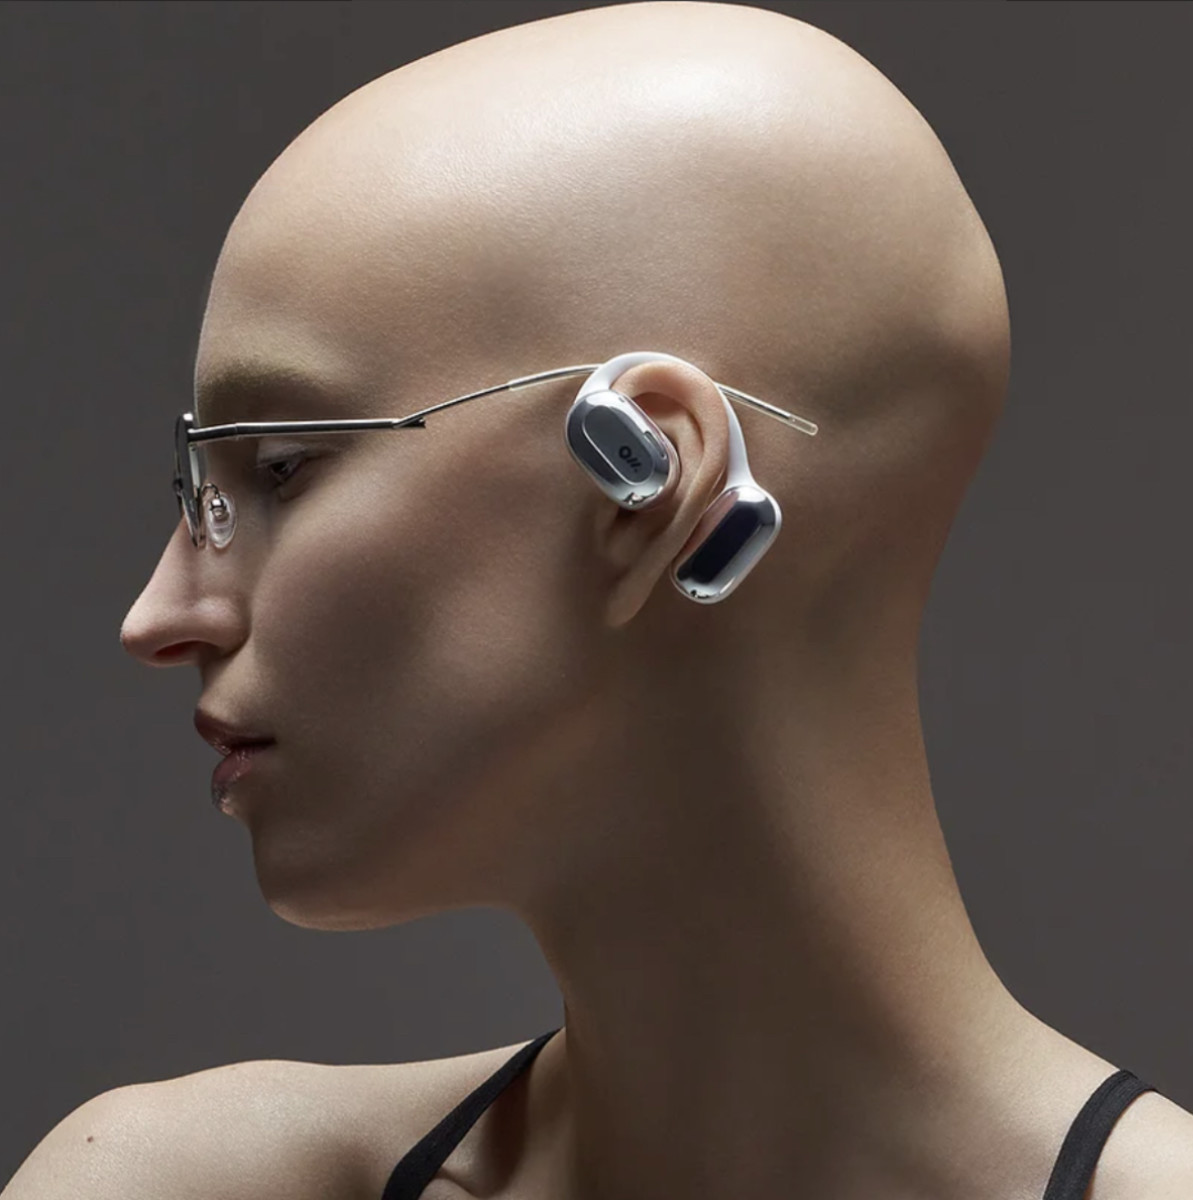 Open Ear Listening: The Oladance Open Ear OWS 2 Wearable Stereo